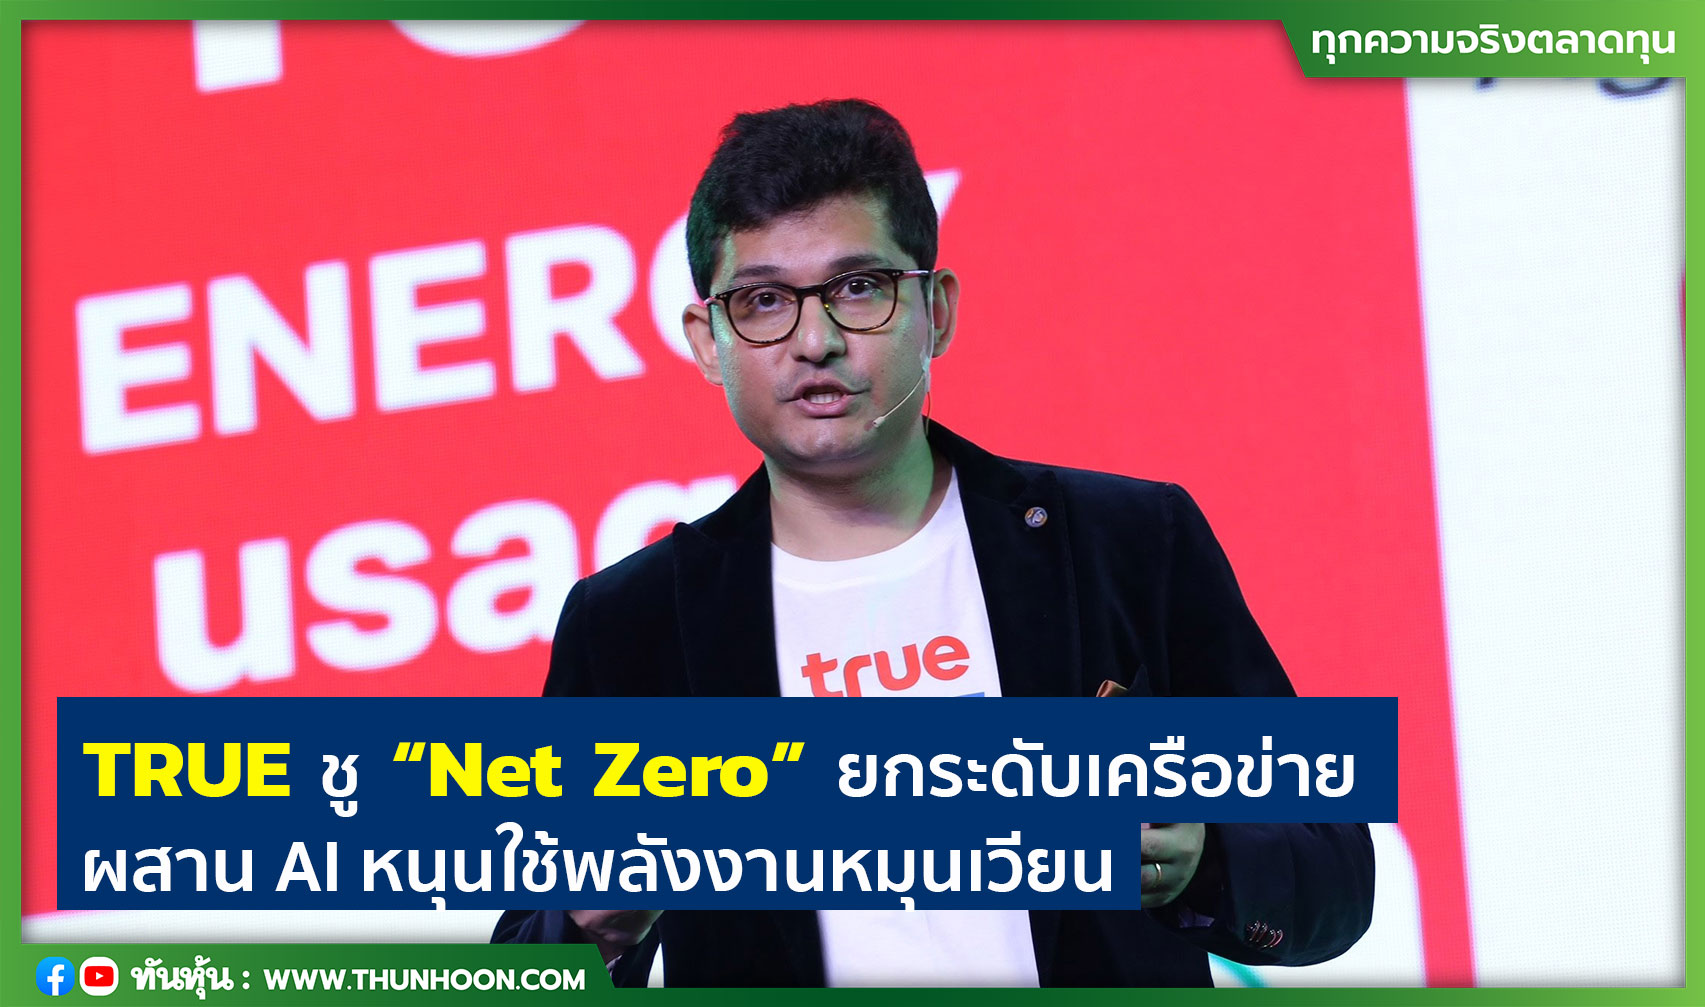 TRUE ชู “Net Zero” ยกระดับเครือข่าย ผสาน AI หนุนใช้พลังงานหมุนเวียน 